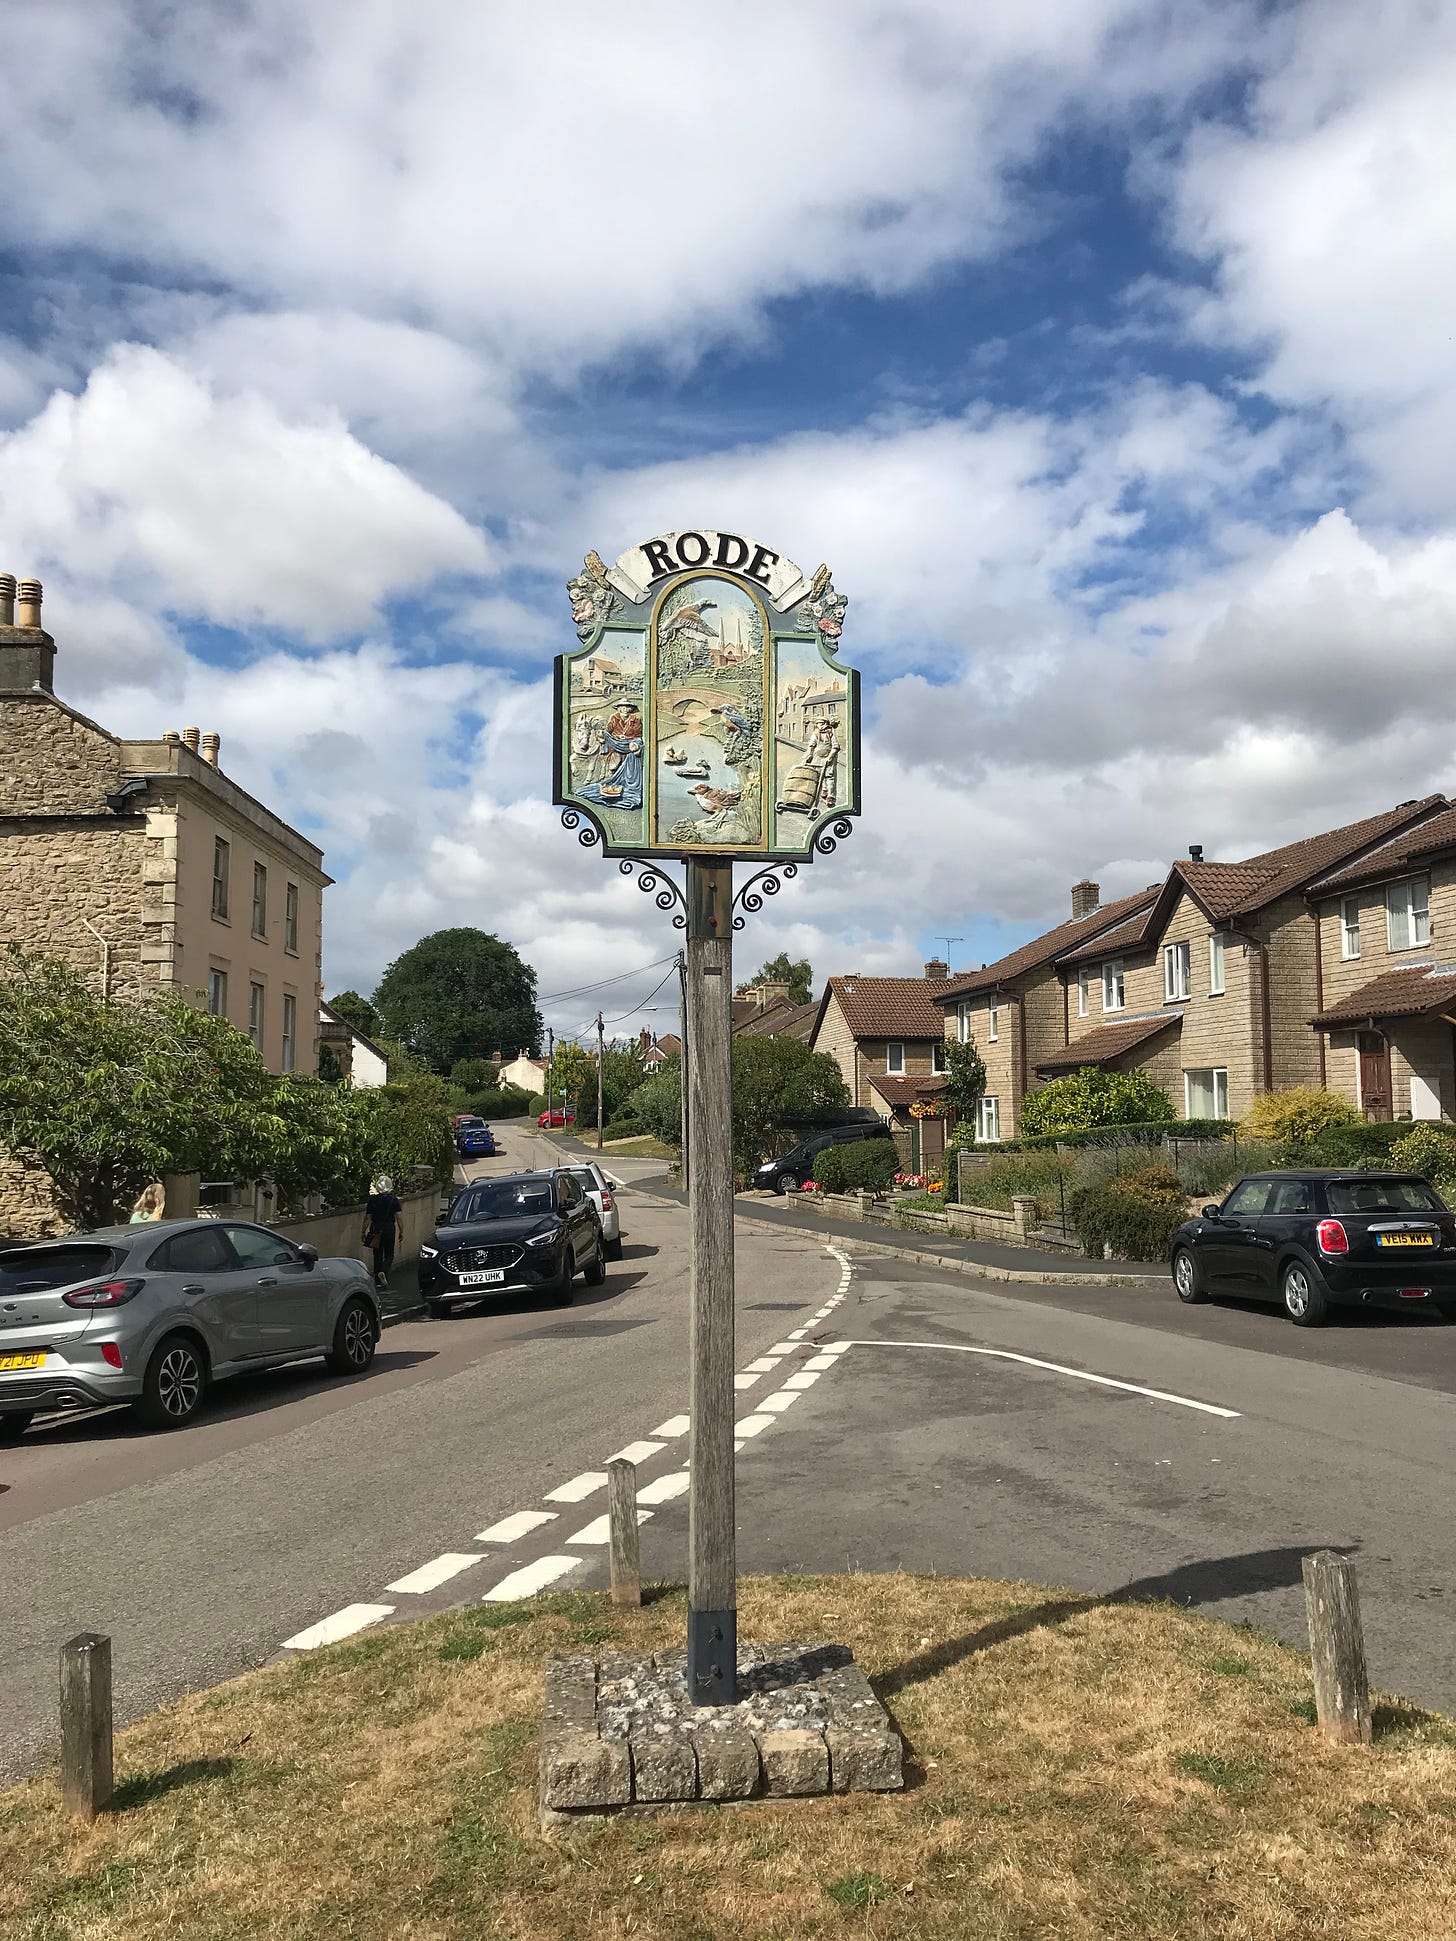 Rode village sign a delightful Somerset village